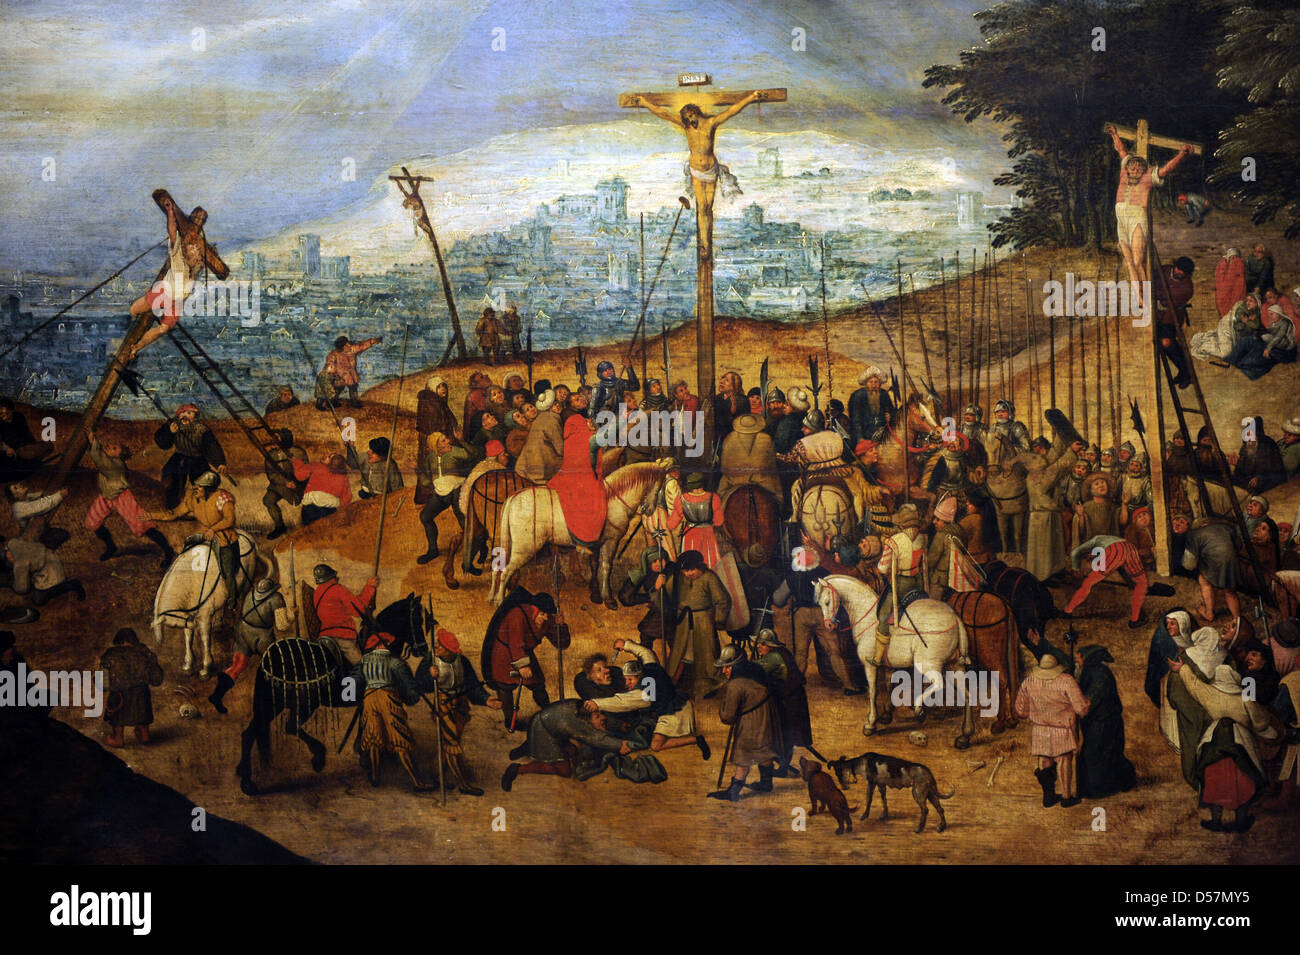 Pieter Brueghel le Jeune (1564-1638). Peintre flamand. La Crucifixion ou le Calvaire, 1617. Musée des beaux-arts de Budapest. Banque D'Images